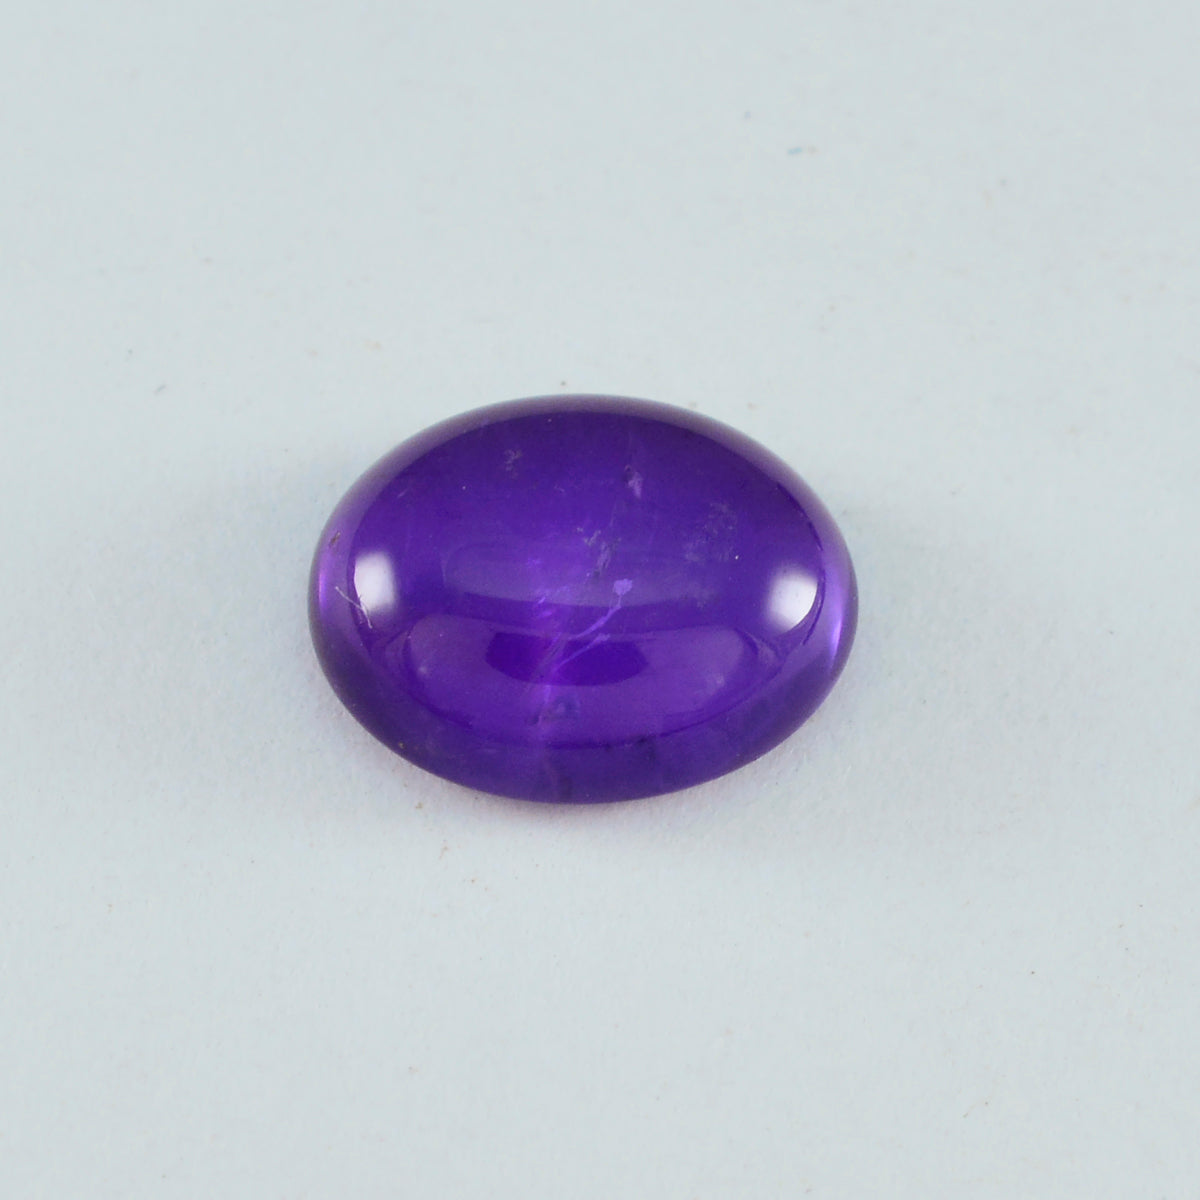 Riyogems 1PC Purple Amethyst Cabochon 10x12 mm Oval Shape nice-looking Quality Gems